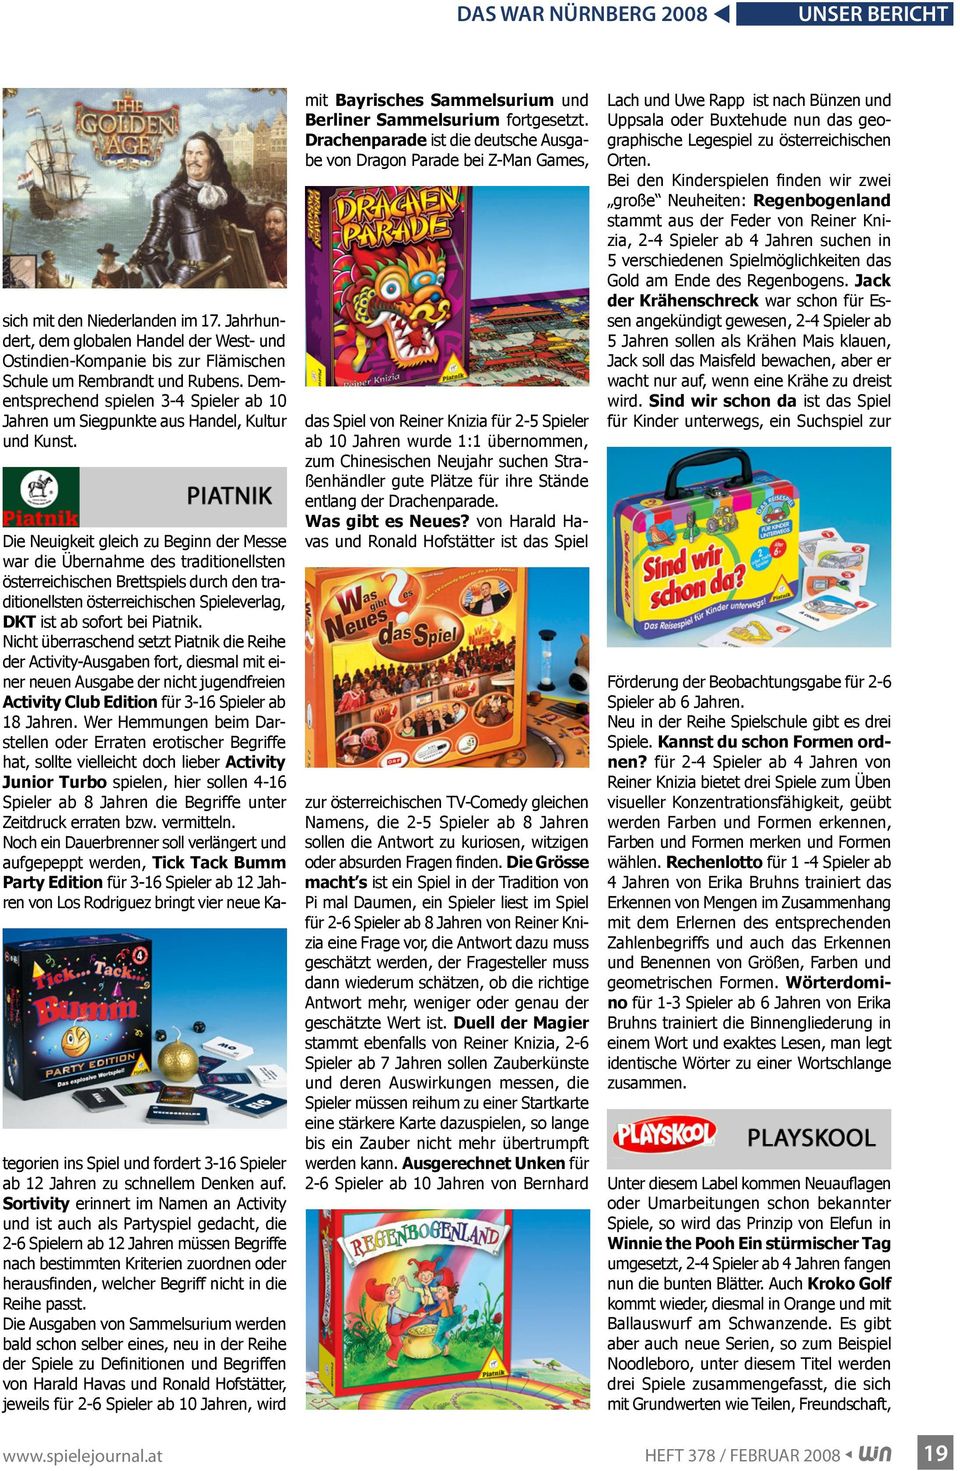 Die Neuigkeit gleich zu Beginn der Messe war die Übernahme des traditionellsten österreichischen Brettspiels durch den traditionellsten österreichischen Spieleverlag, DKT ist ab sofort bei Piatnik.